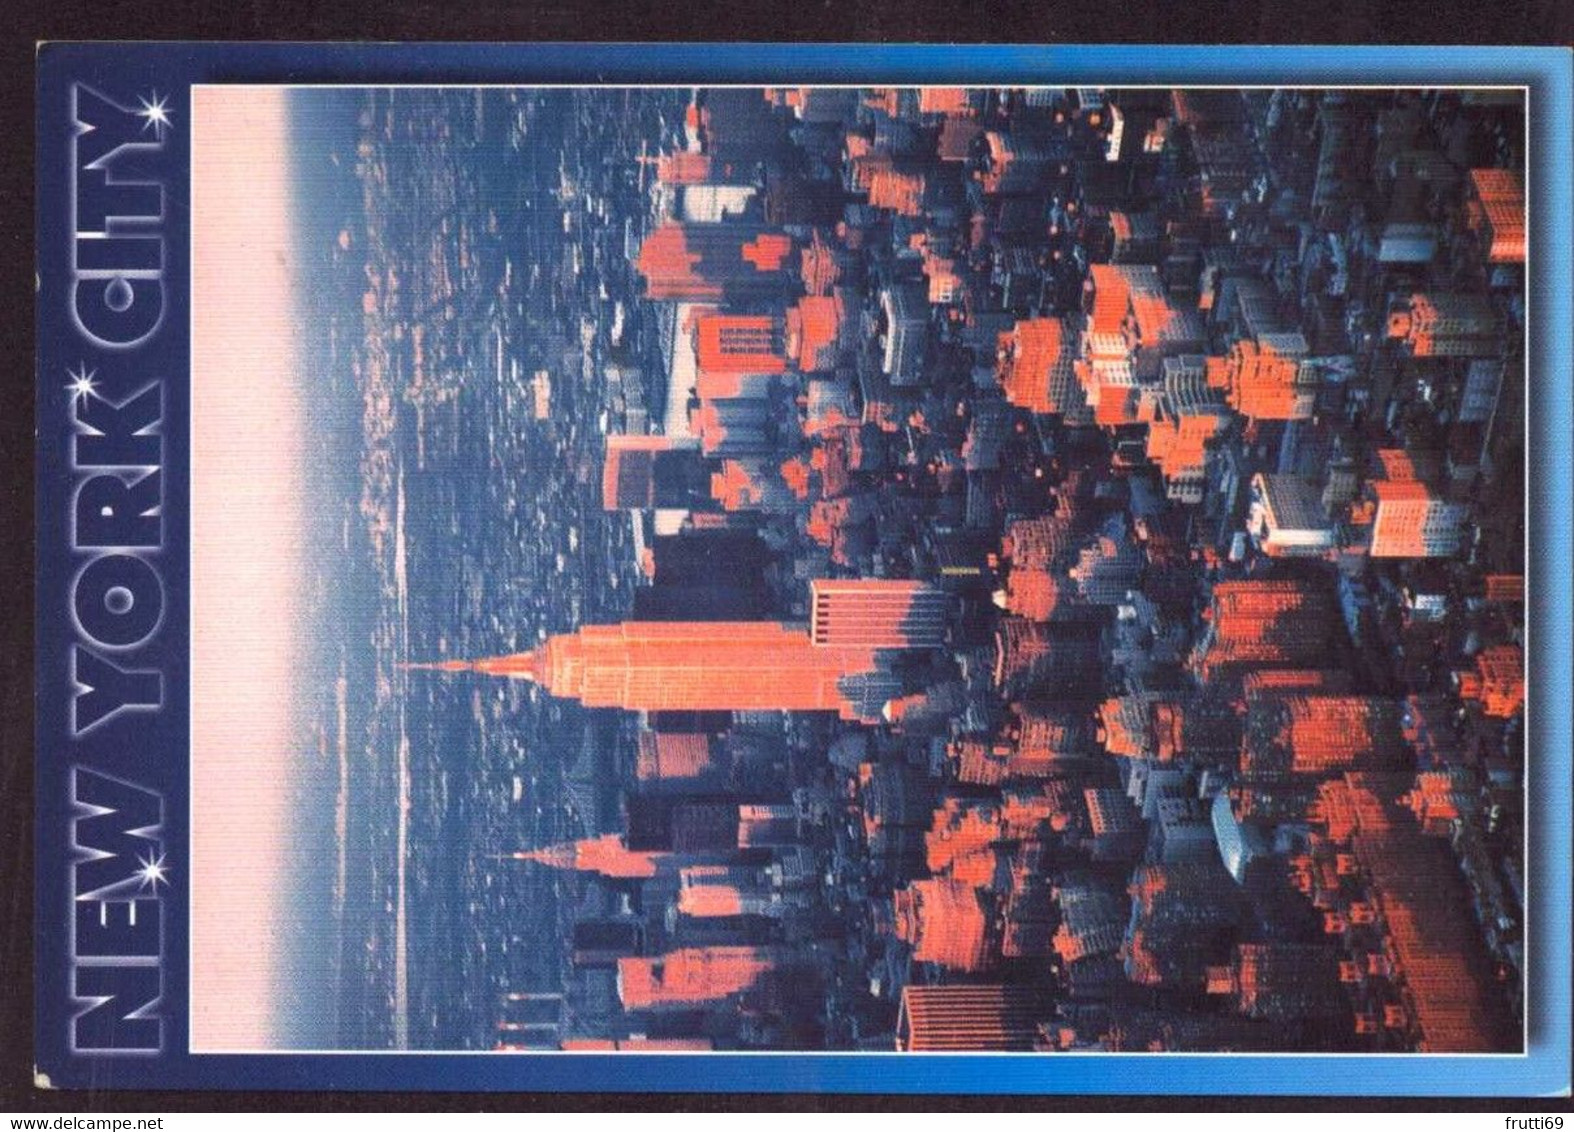 AK 078449 USA - New York City - Mehransichten, Panoramakarten